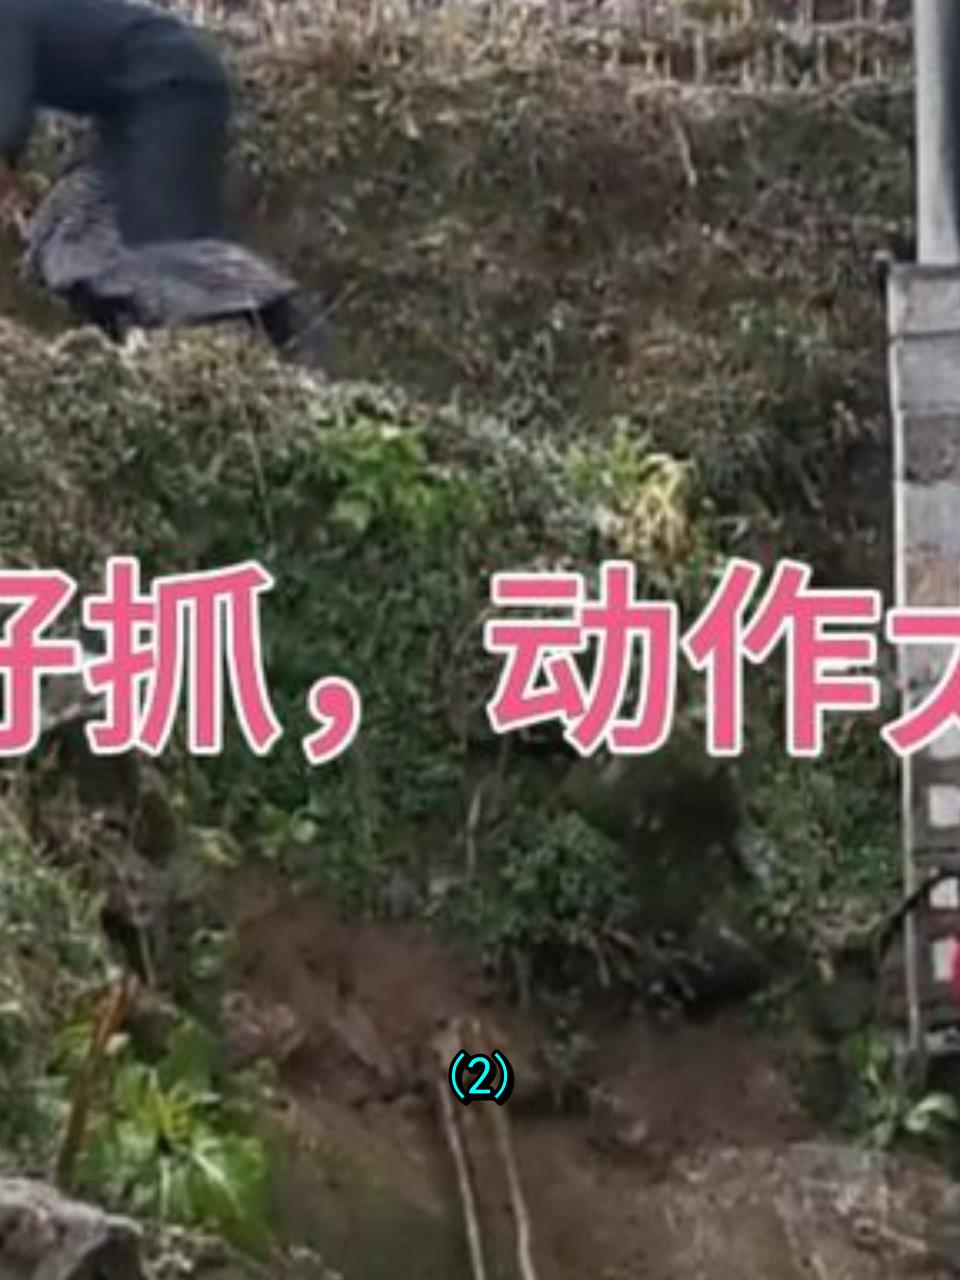 贵州农家门锁腊肉,黑衣女子鬼祟偷窃,被监控拍下惊天一幕!